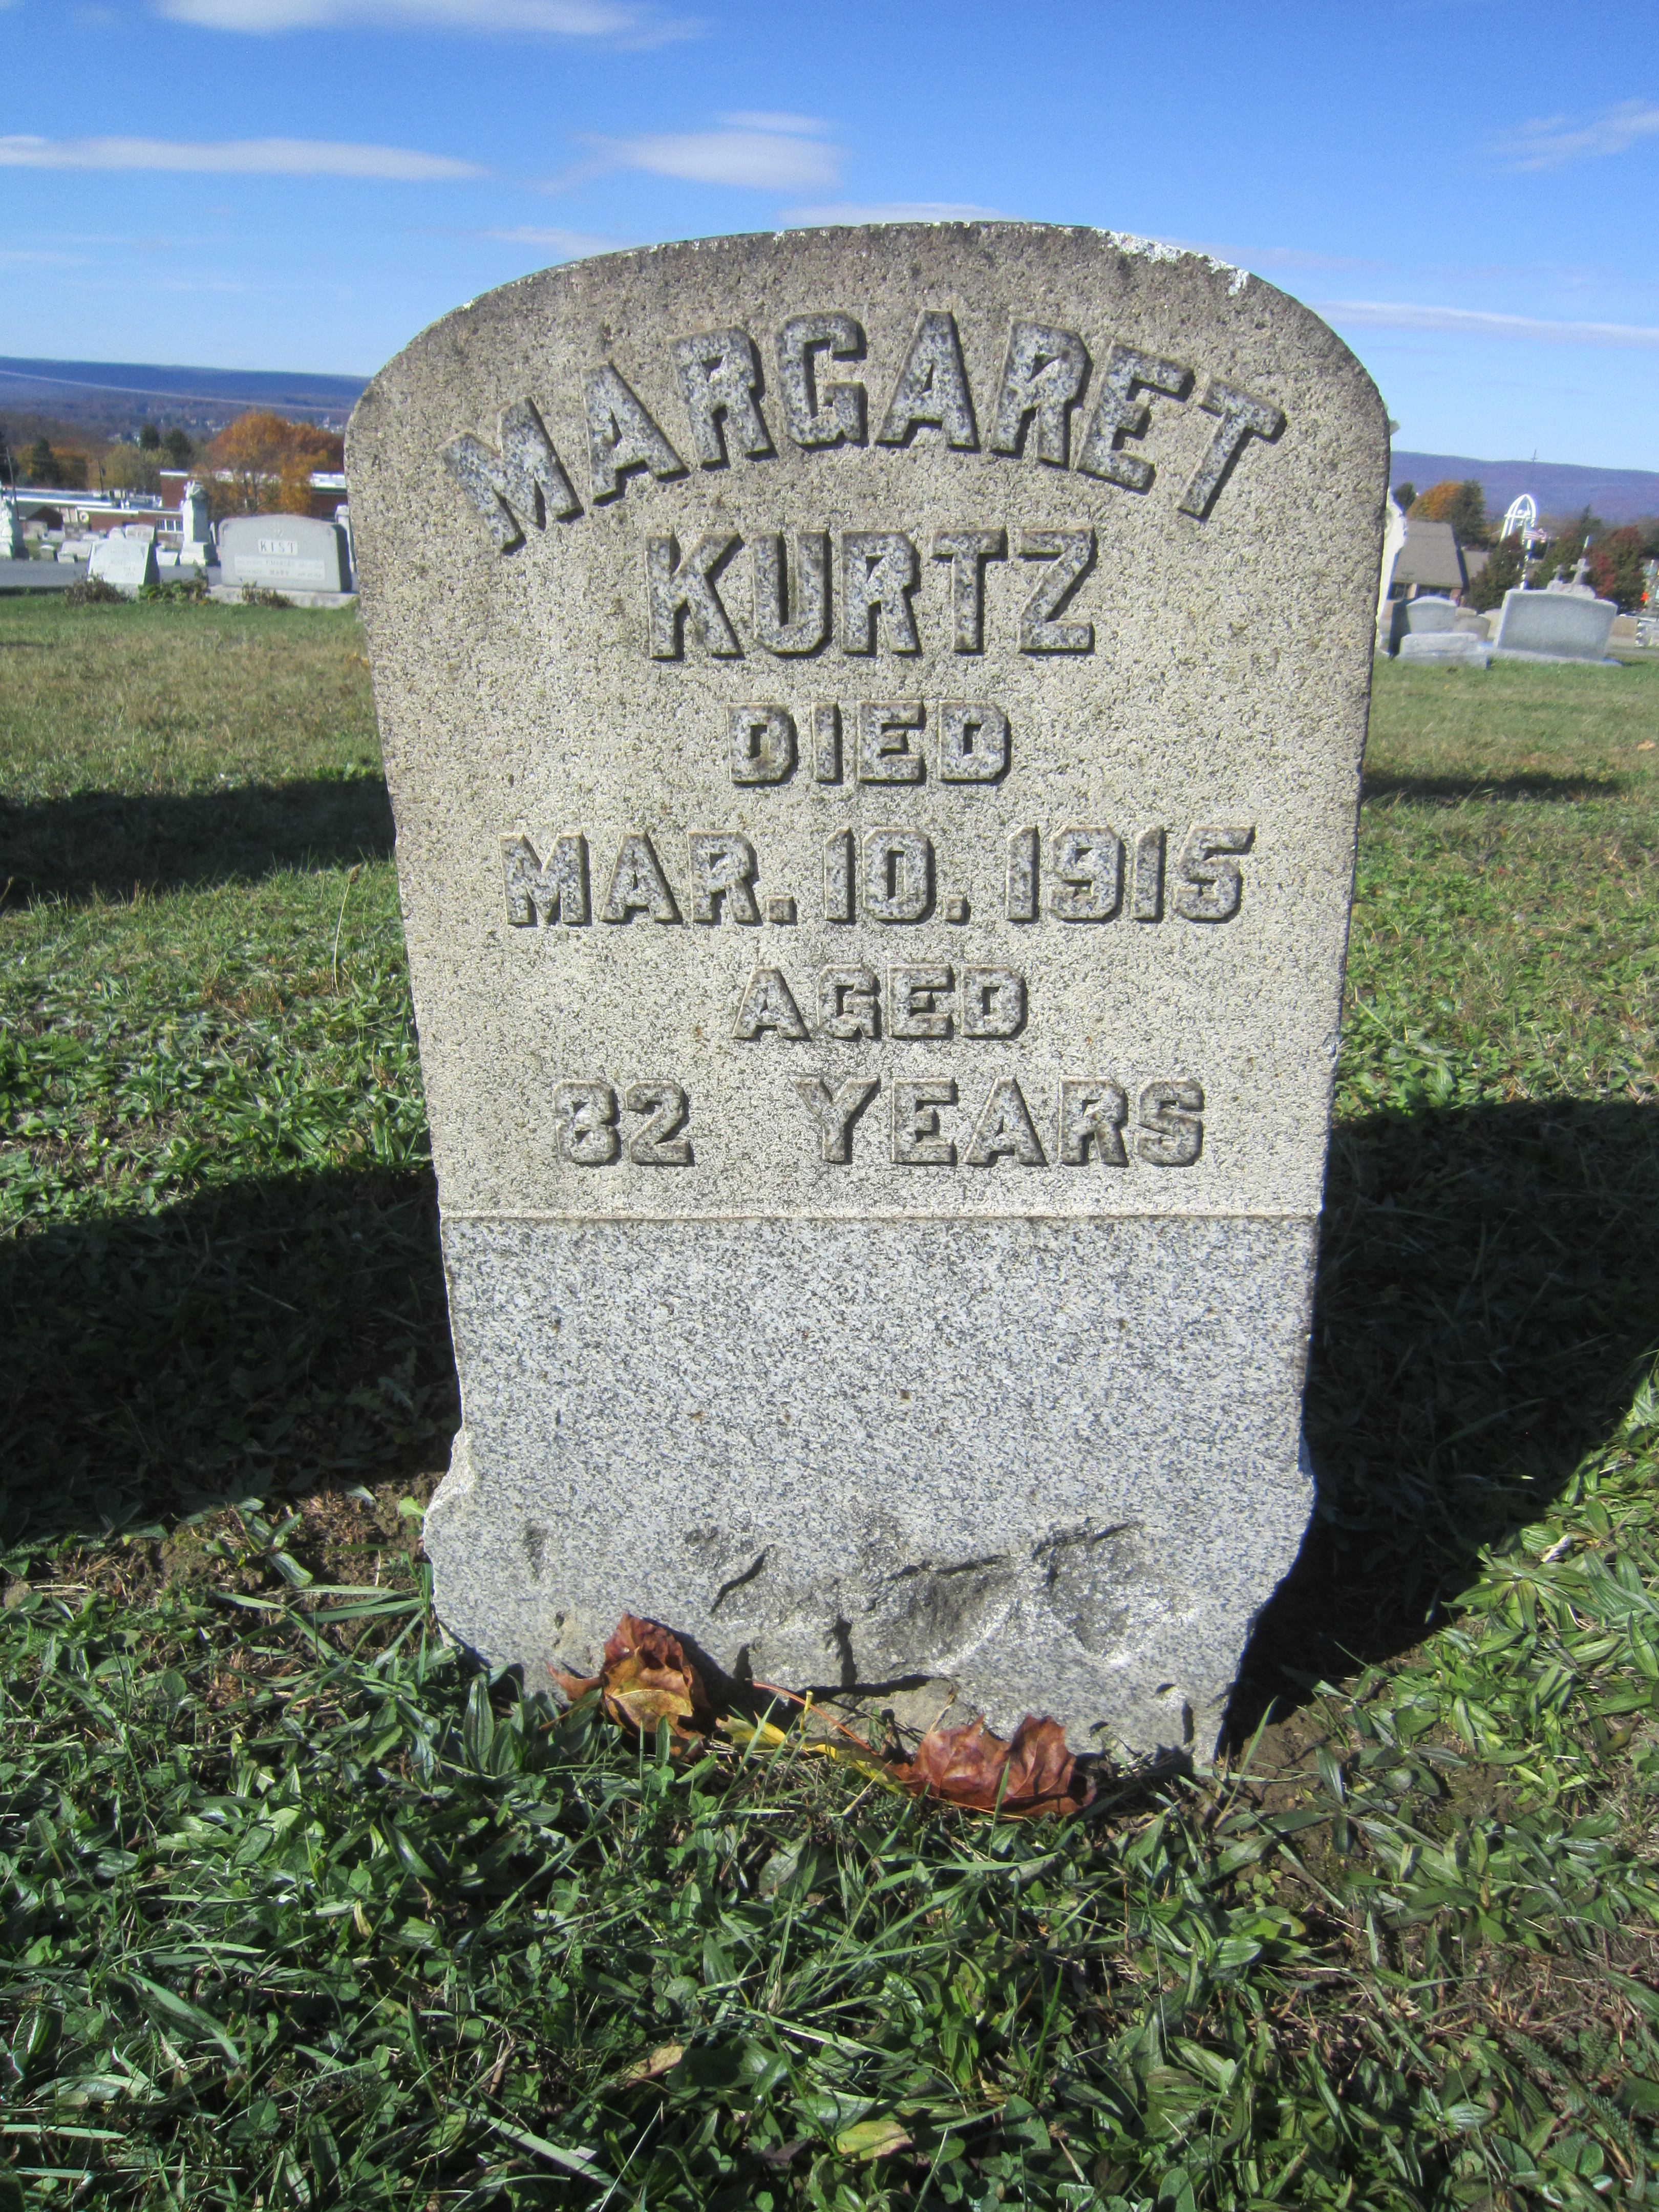 Margaret Malzi Kurtz (1833-1915)